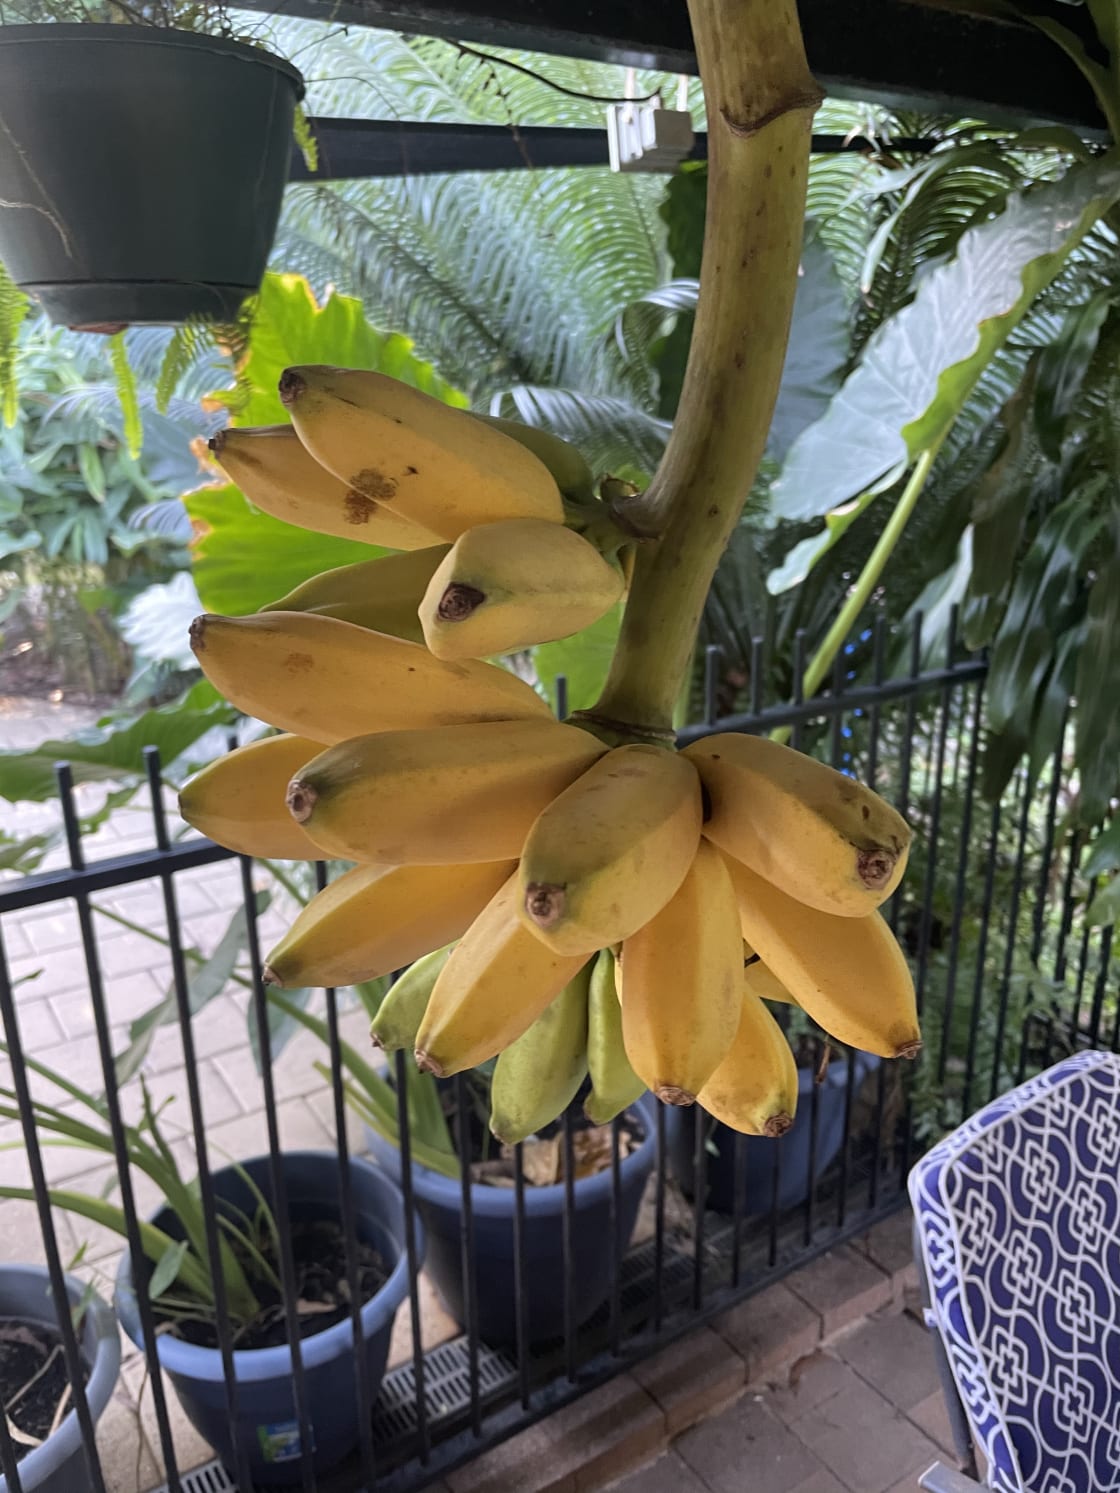 Home grown organic bananas 